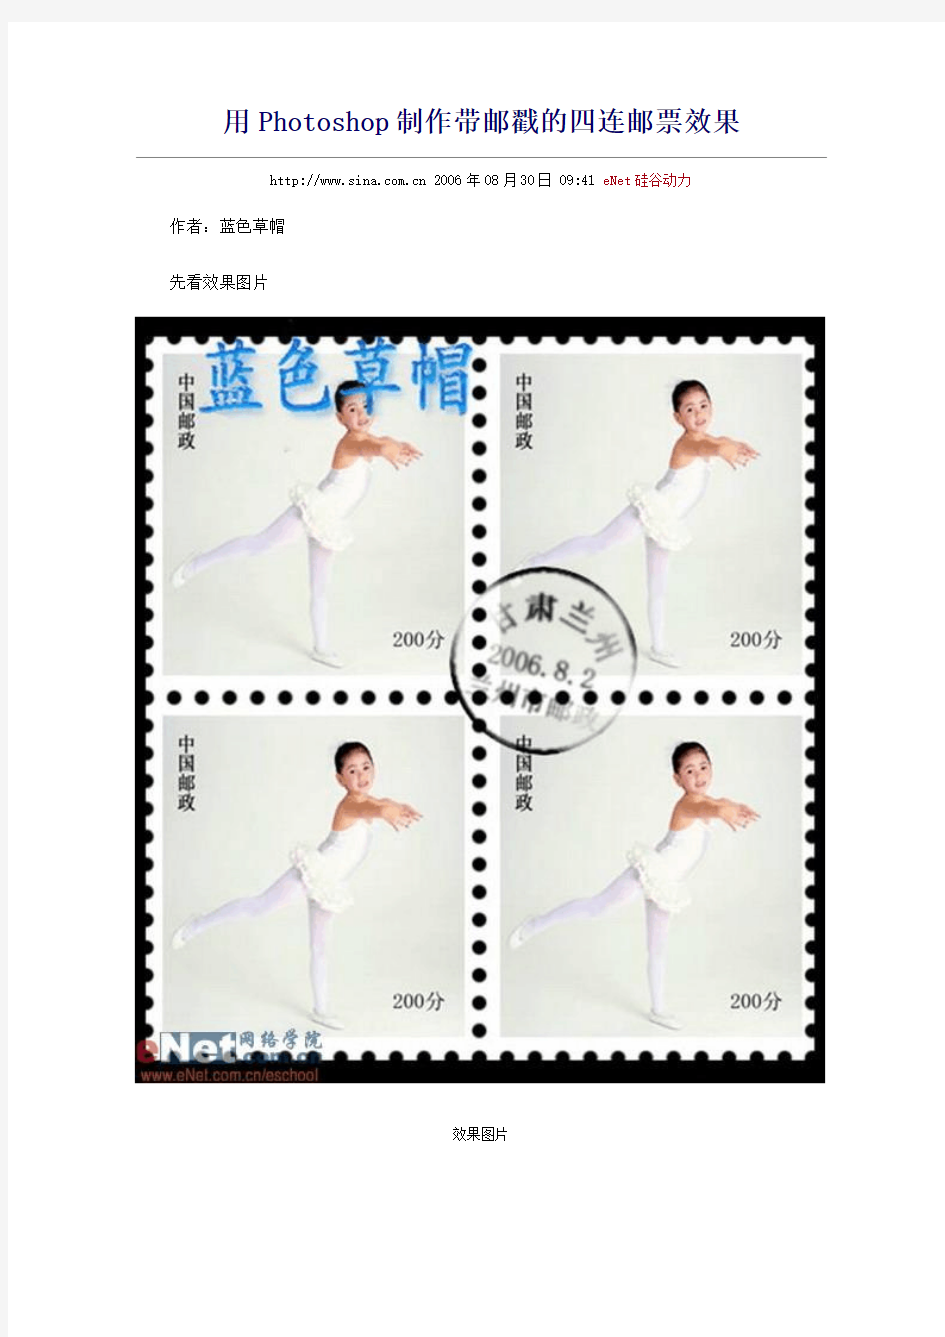 用Photoshop制作带邮戳的四连邮票效果